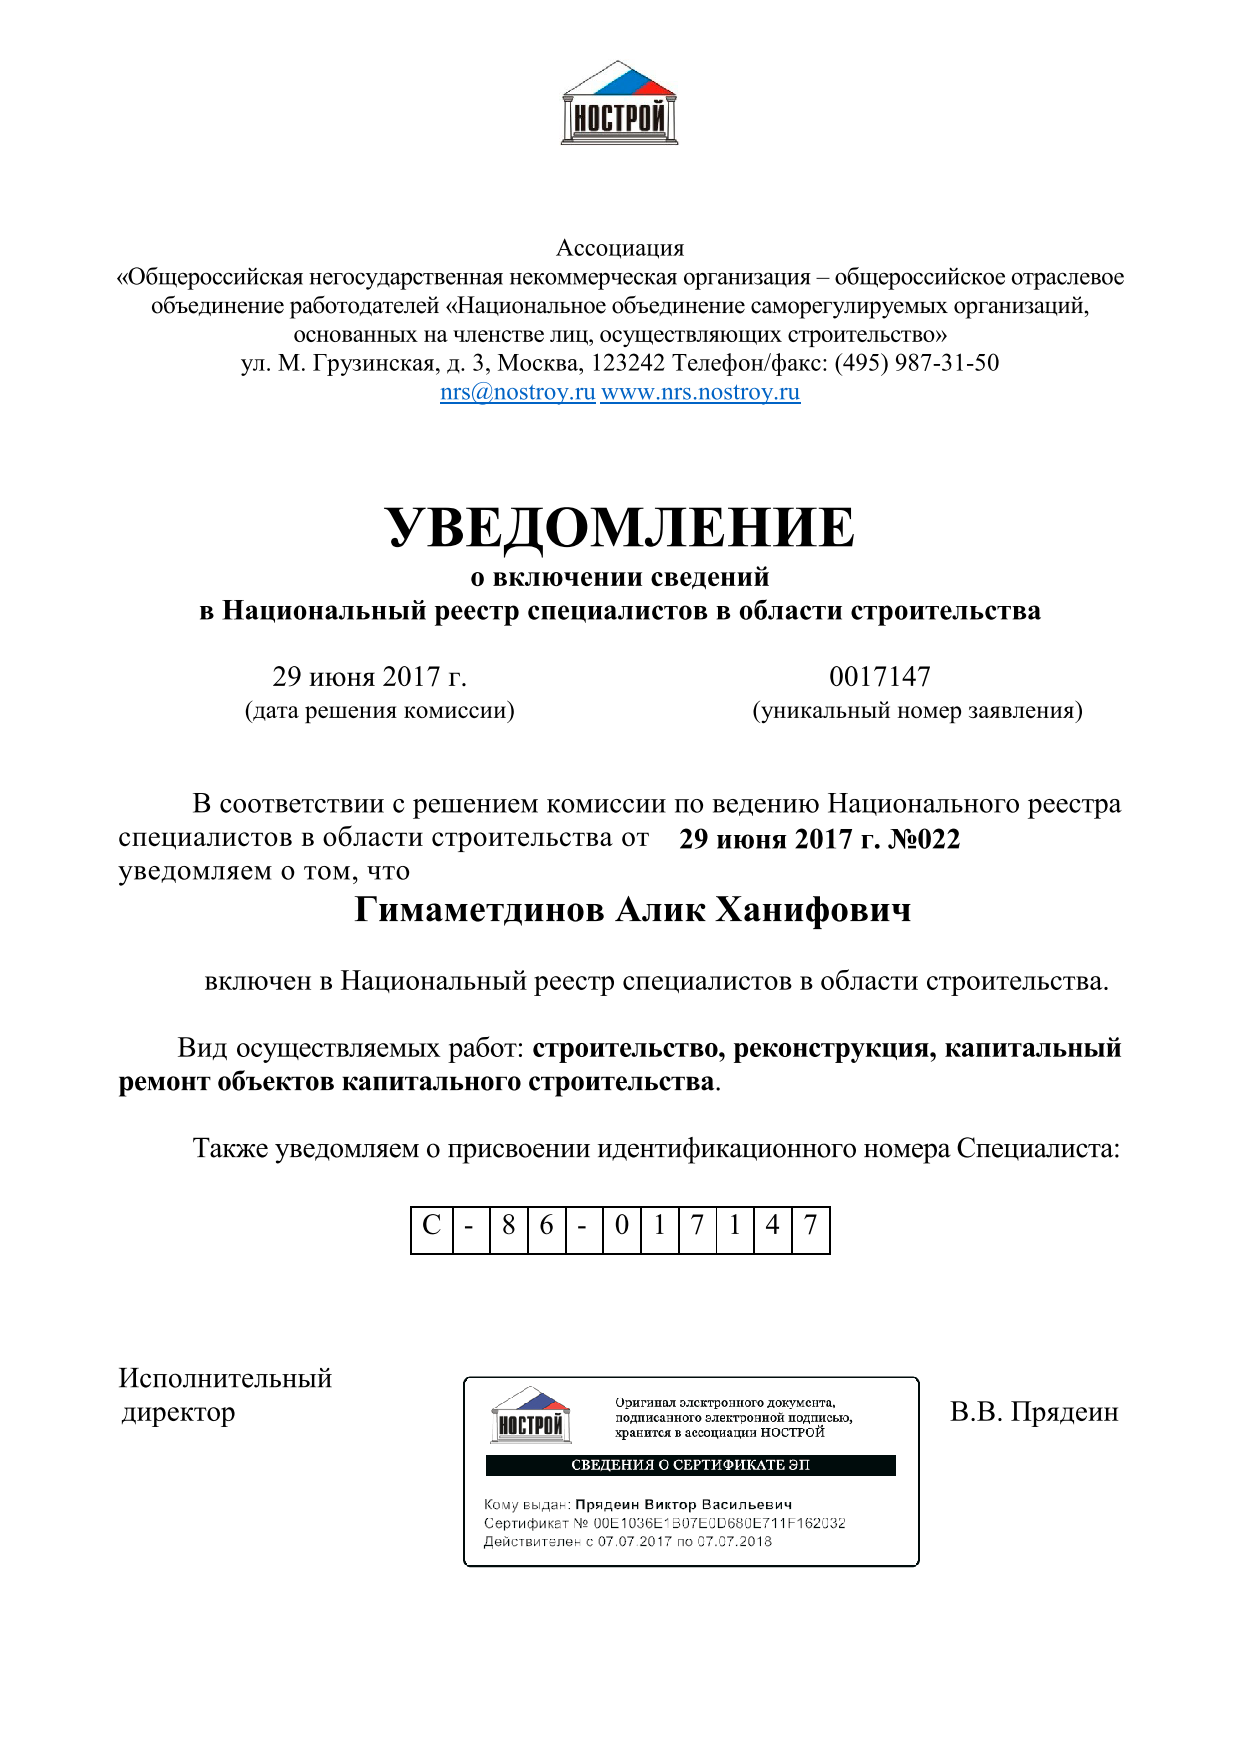 Уведомление о включении сведений в Национальный реестр специалистов в области строительства Гимаметдинова Алика Ханифовича